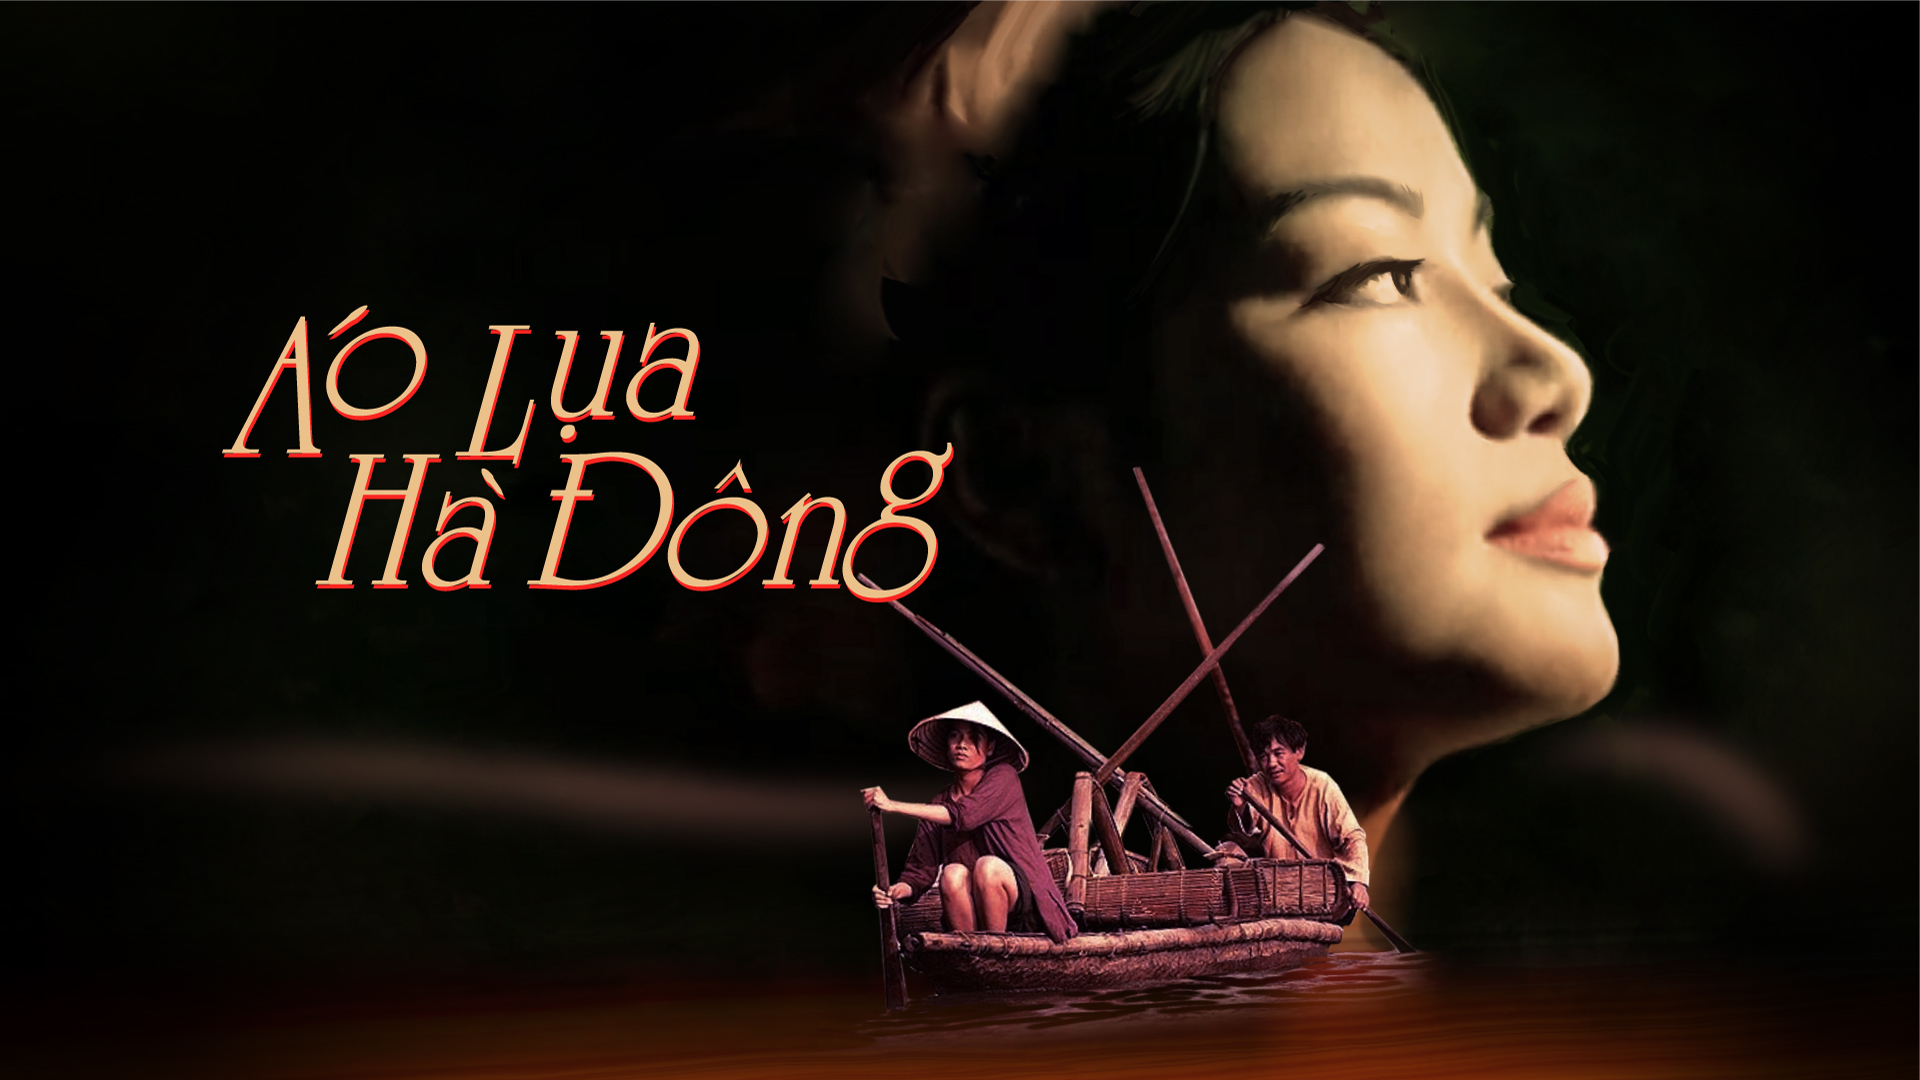 4. Phim The White Silk Dress (Ao Lua Ha Dong) - Áo lụa Hà Đông